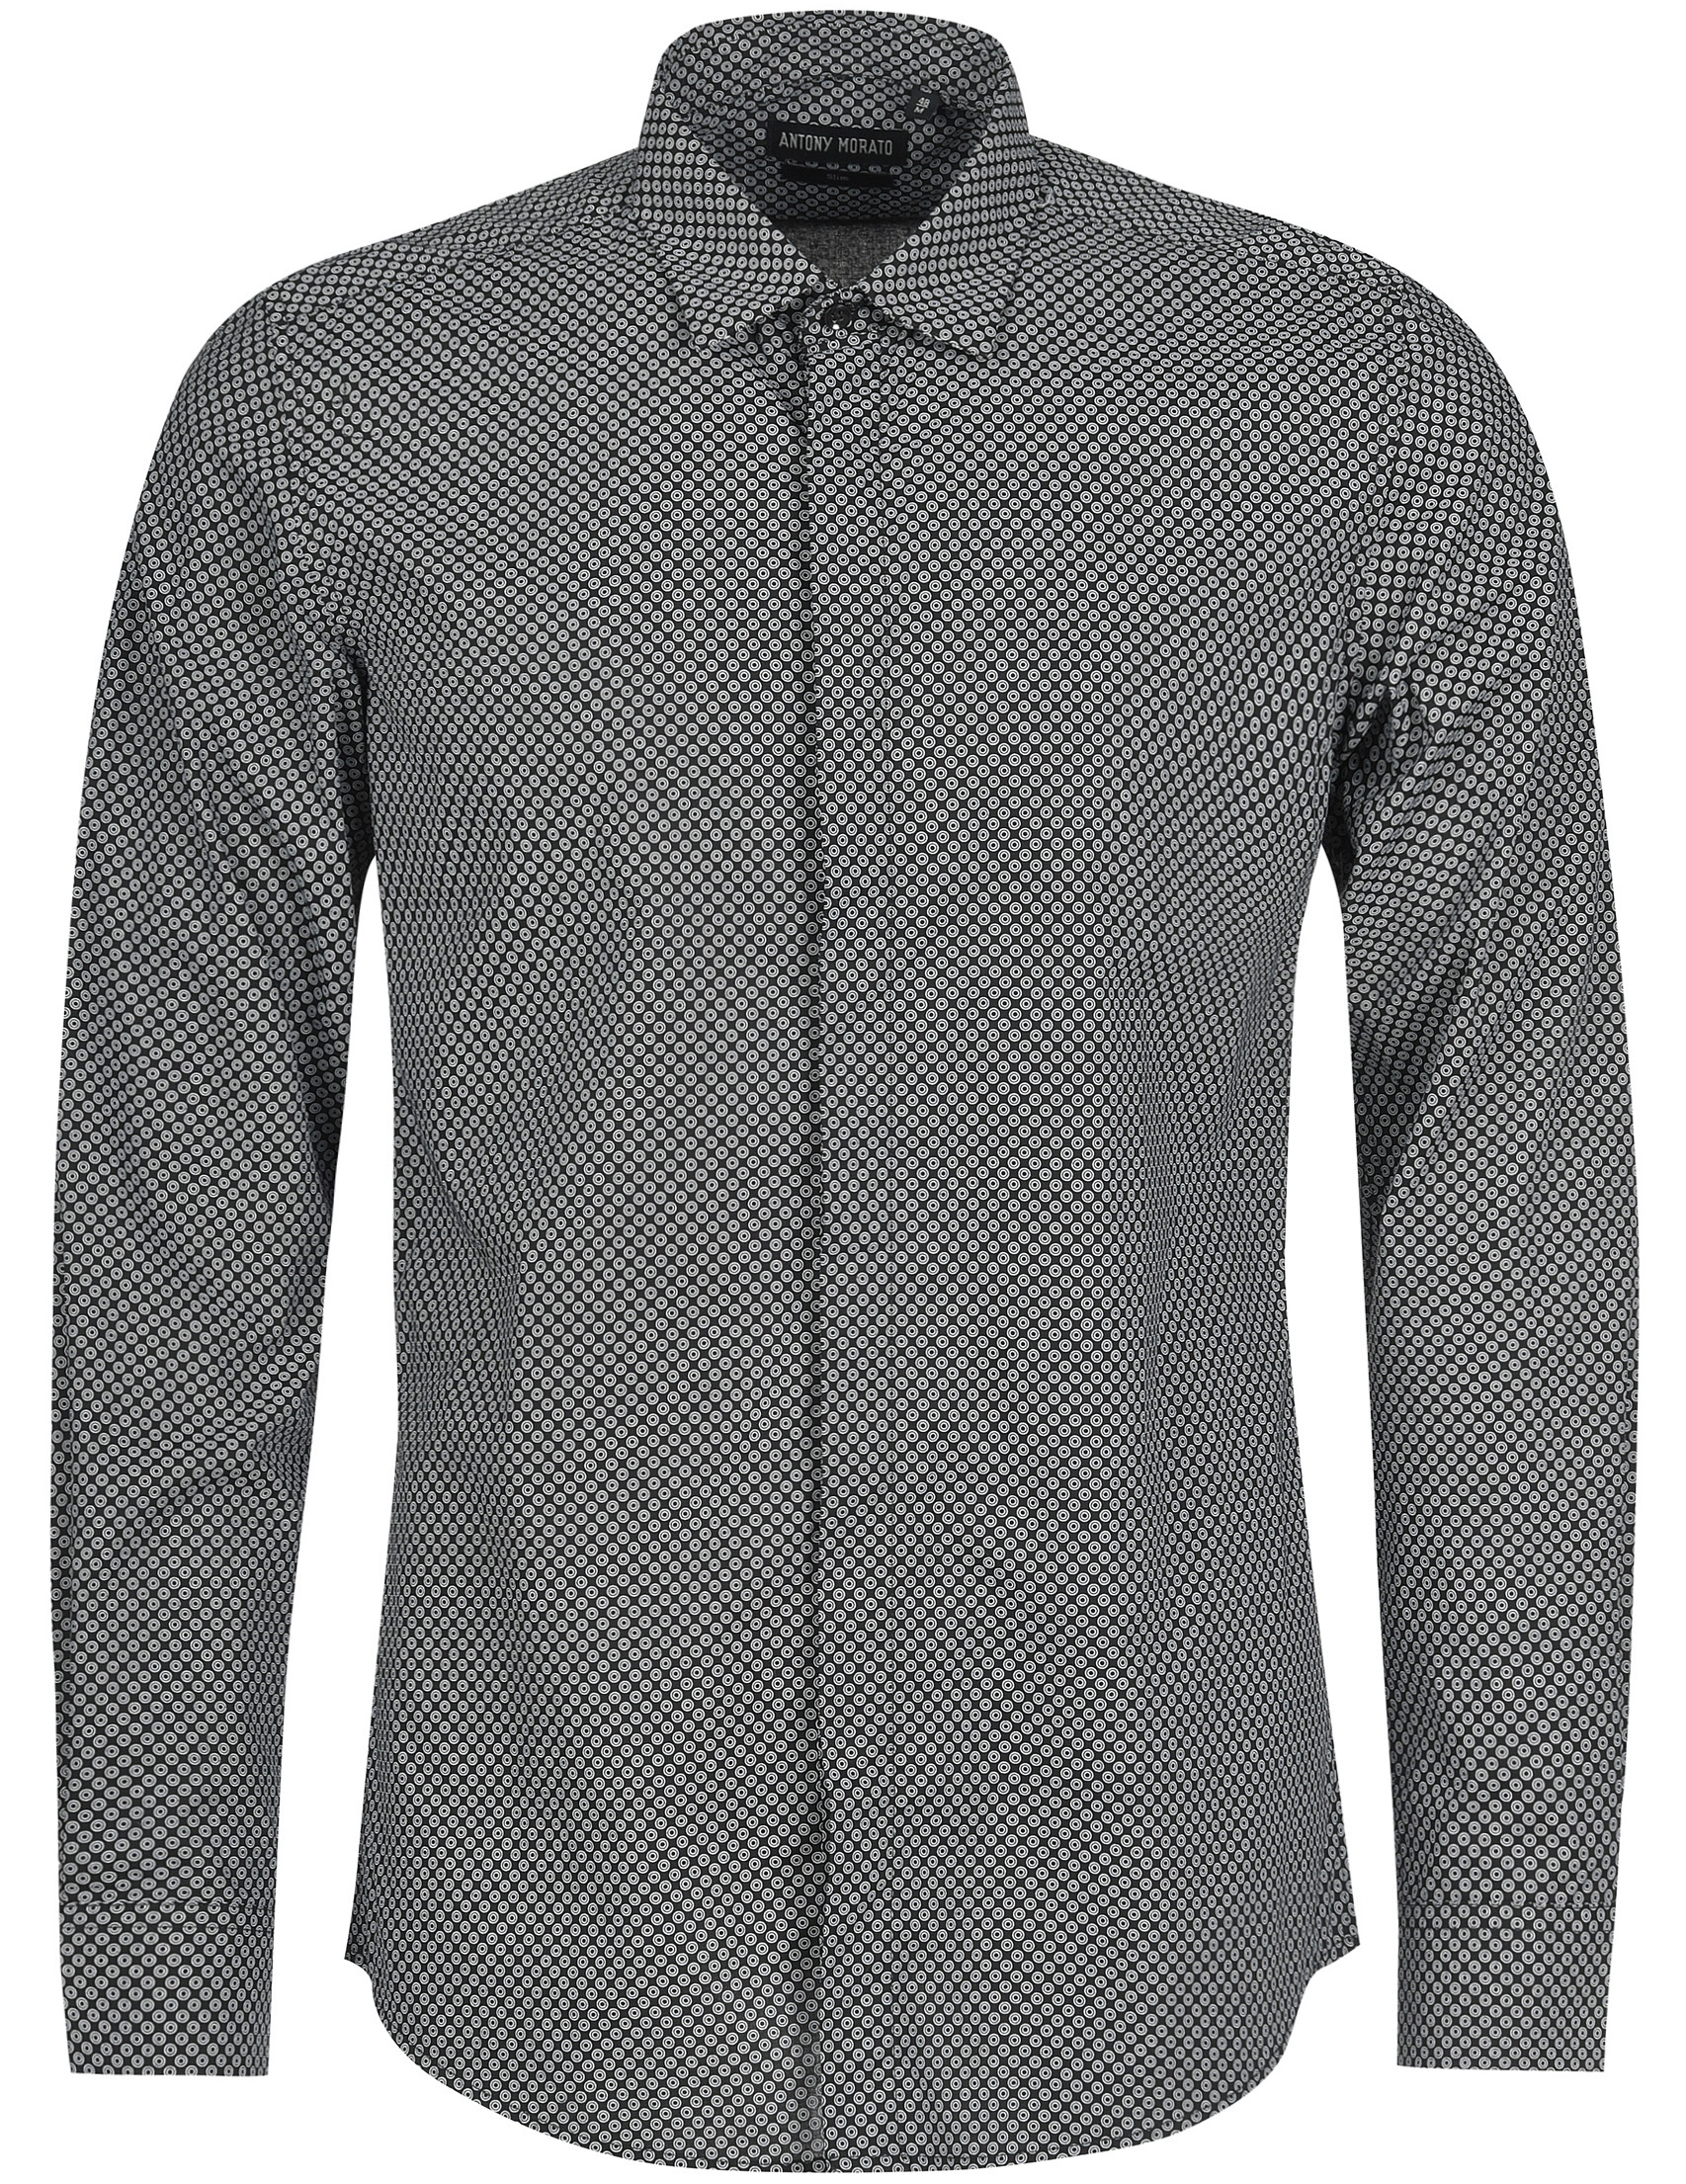 Мужская рубашка ANTONY MORATO MMSL003259000-M_gray